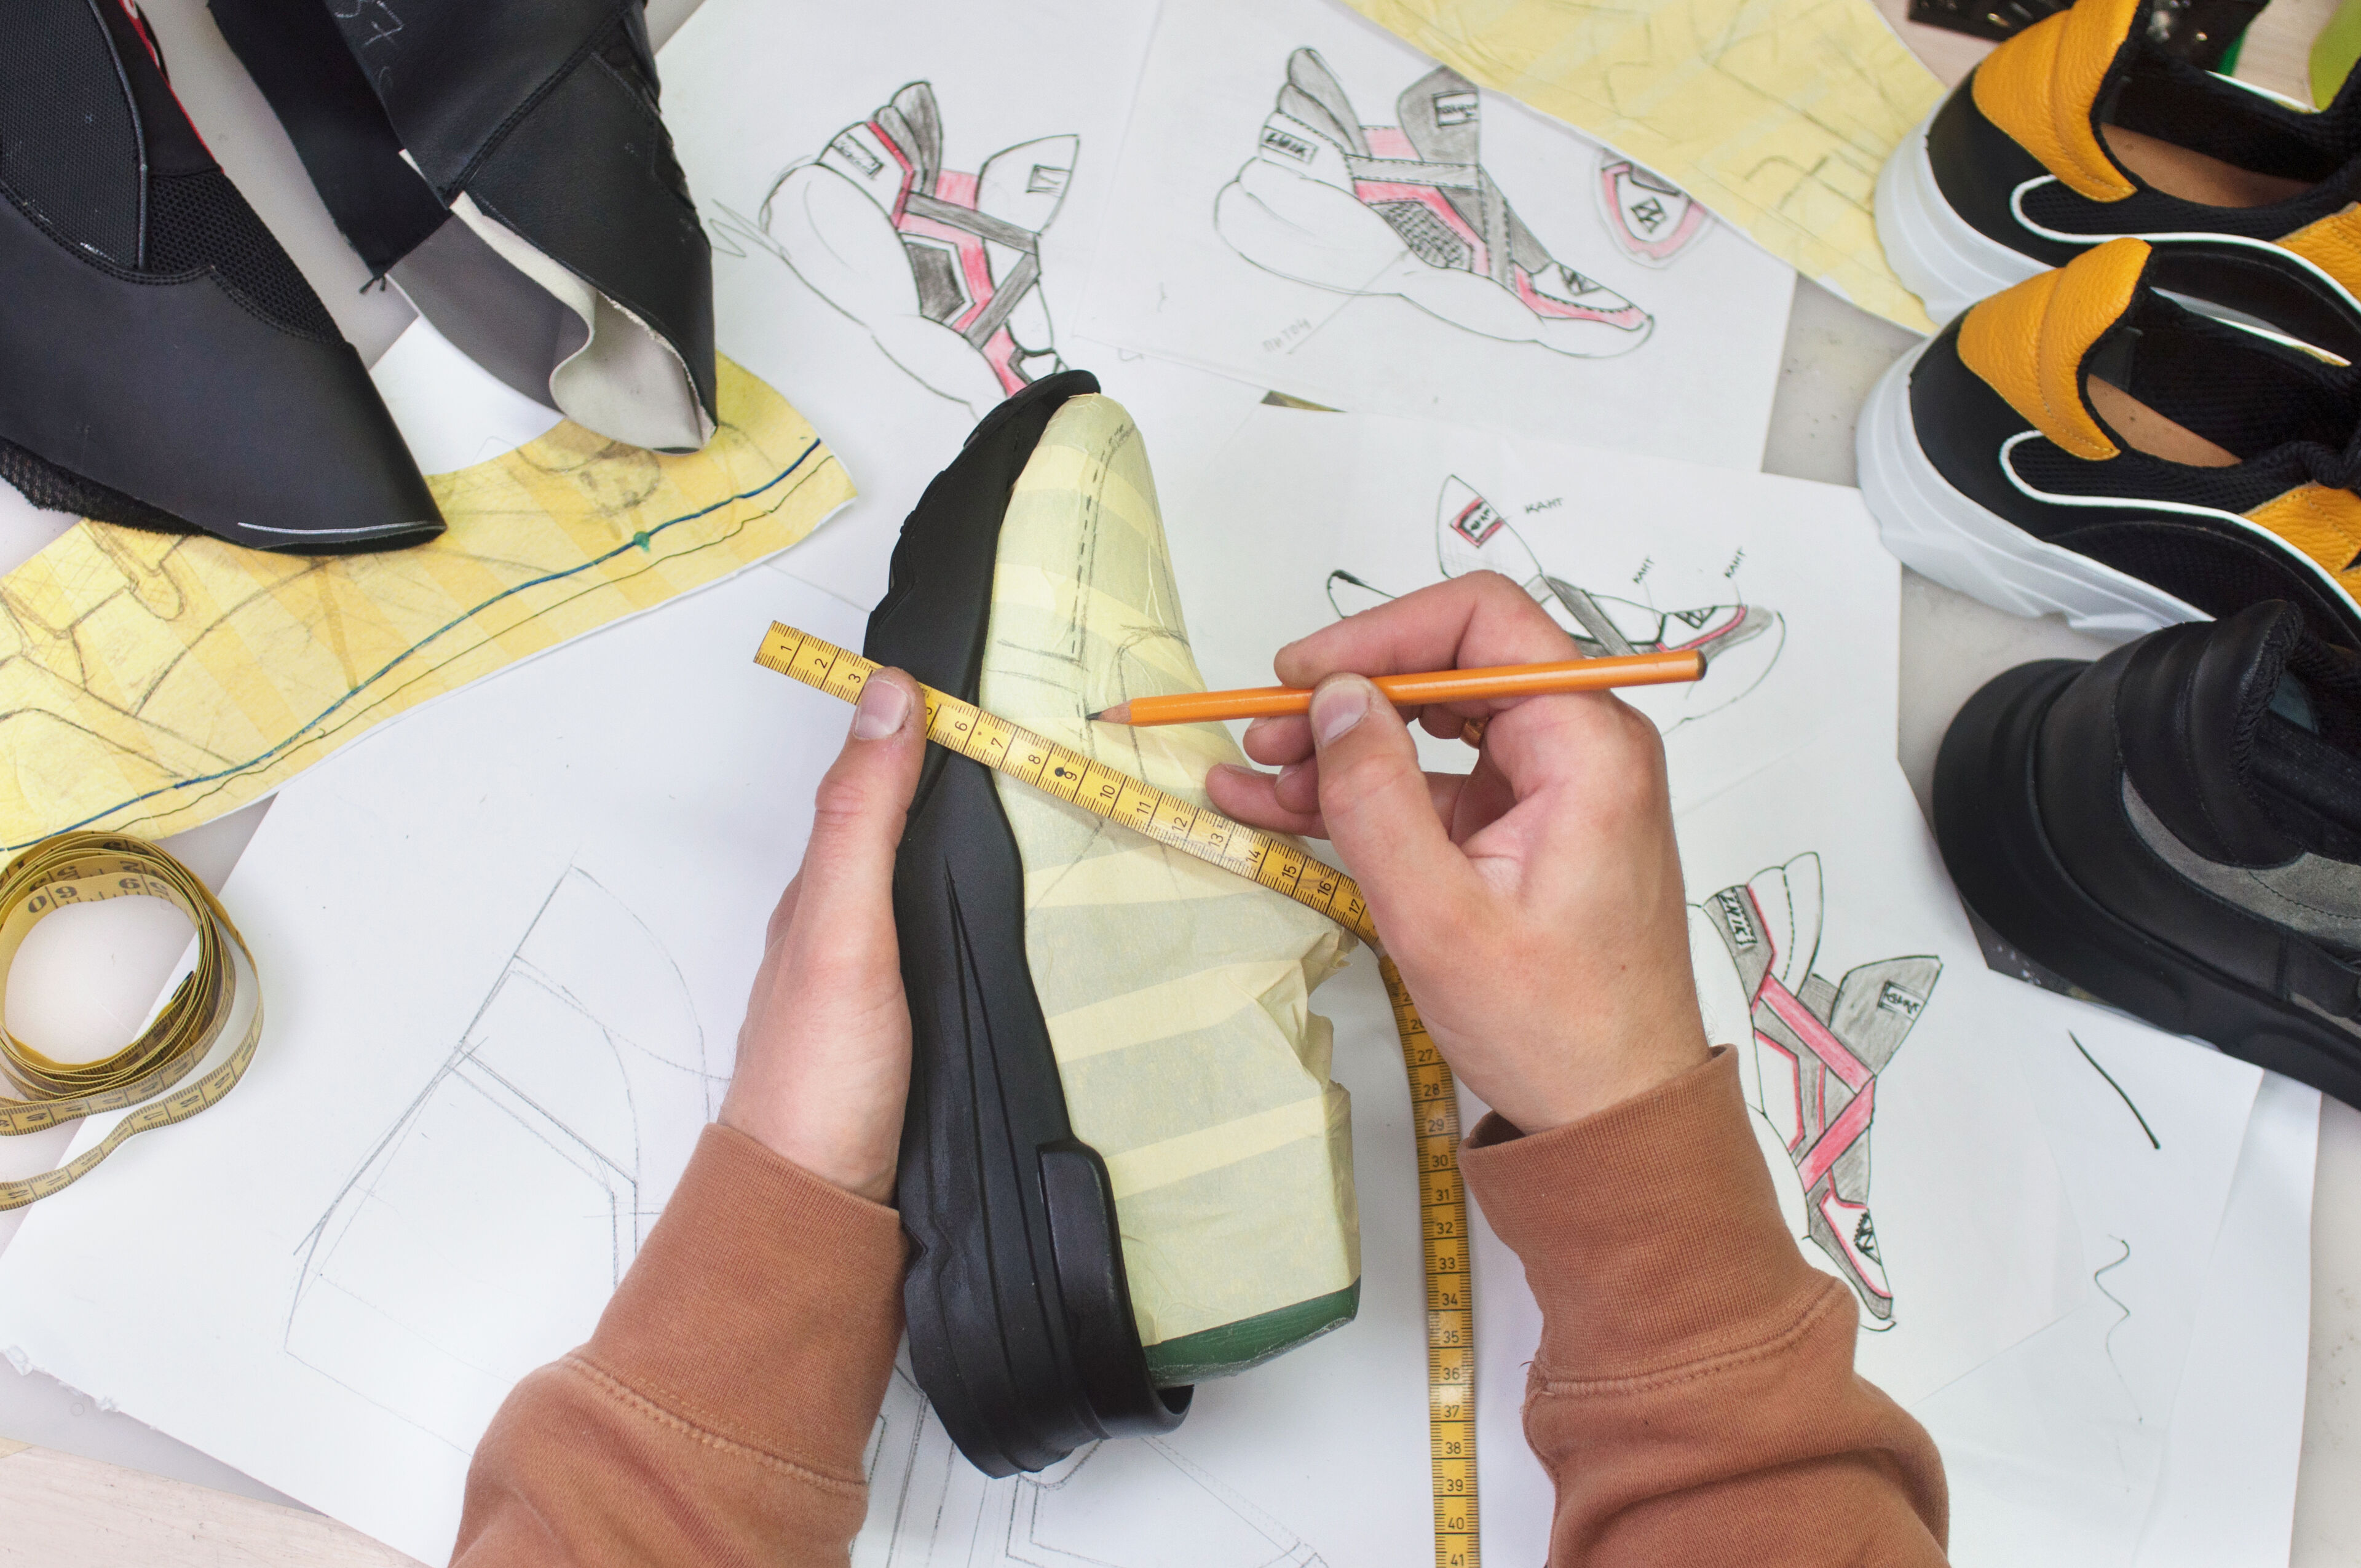 Una mano mide un prototipo de zapatilla con una cinta métrica rodeada de bocetos y otros prototipos.